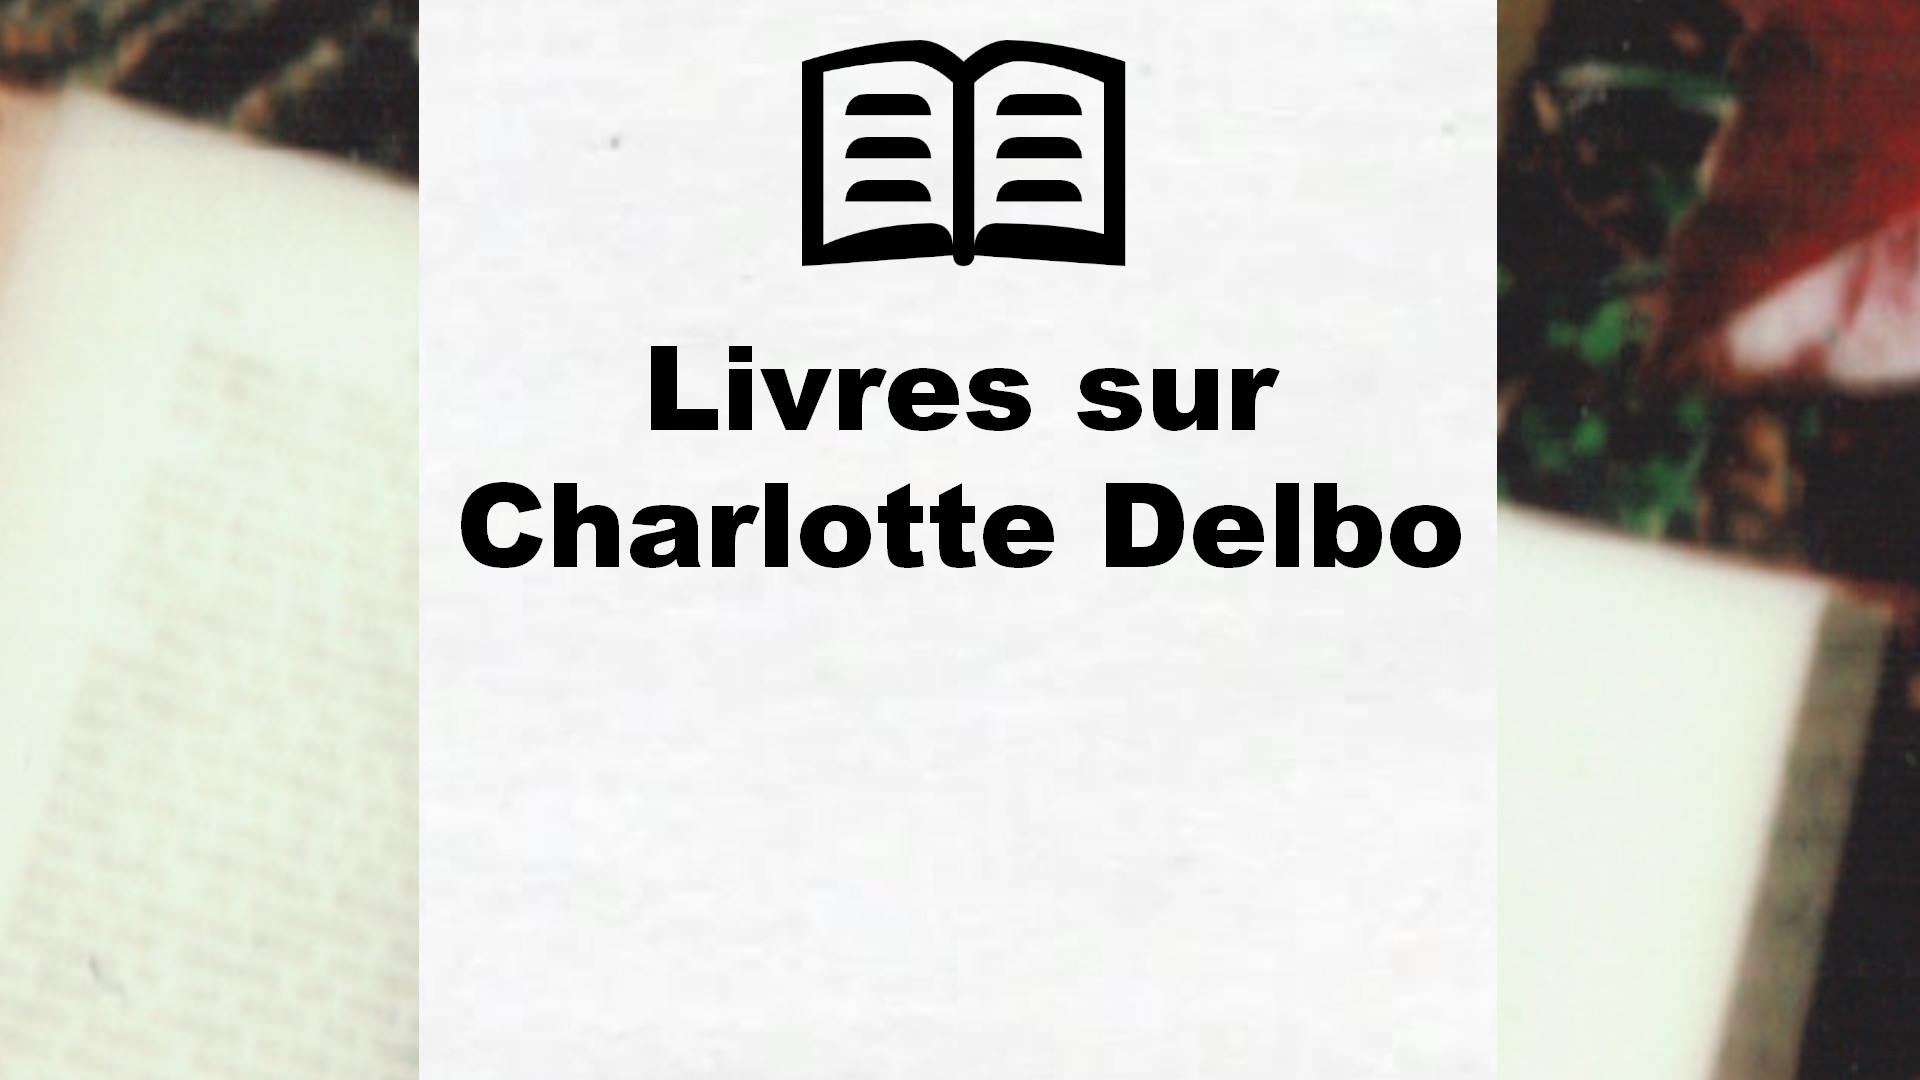 Livres sur Charlotte Delbo